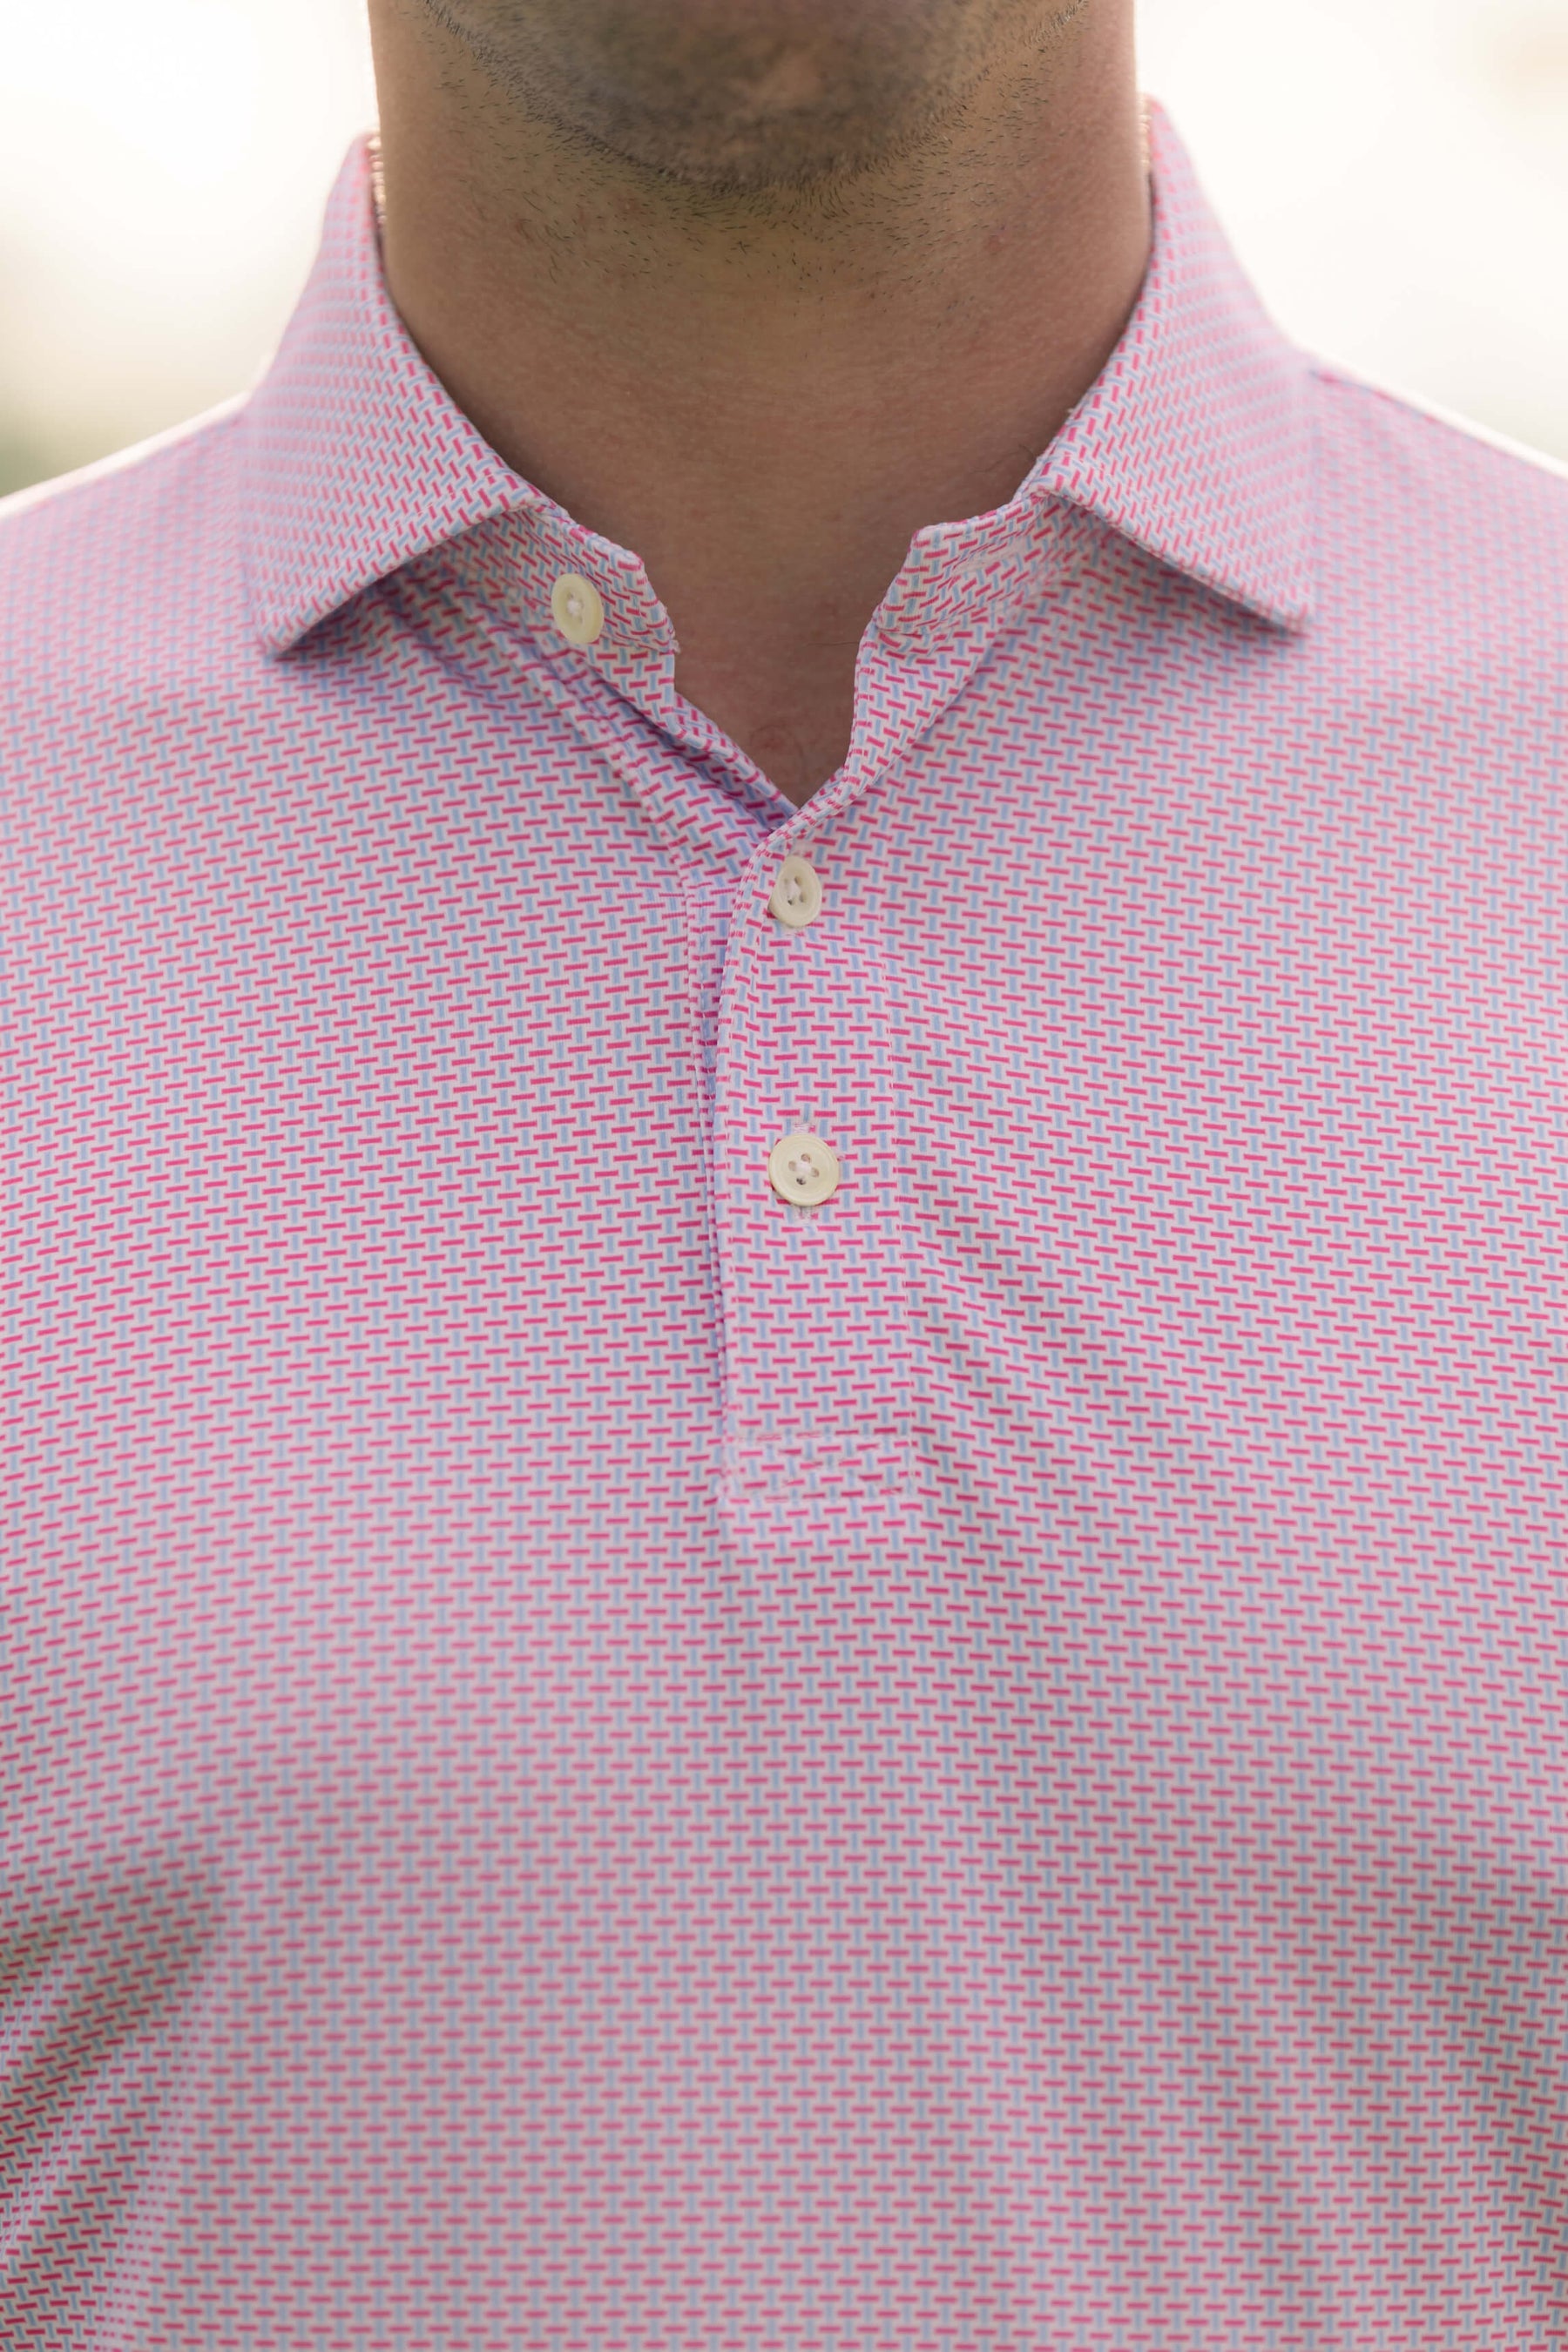 Man Wearing Pink Polo Shirt